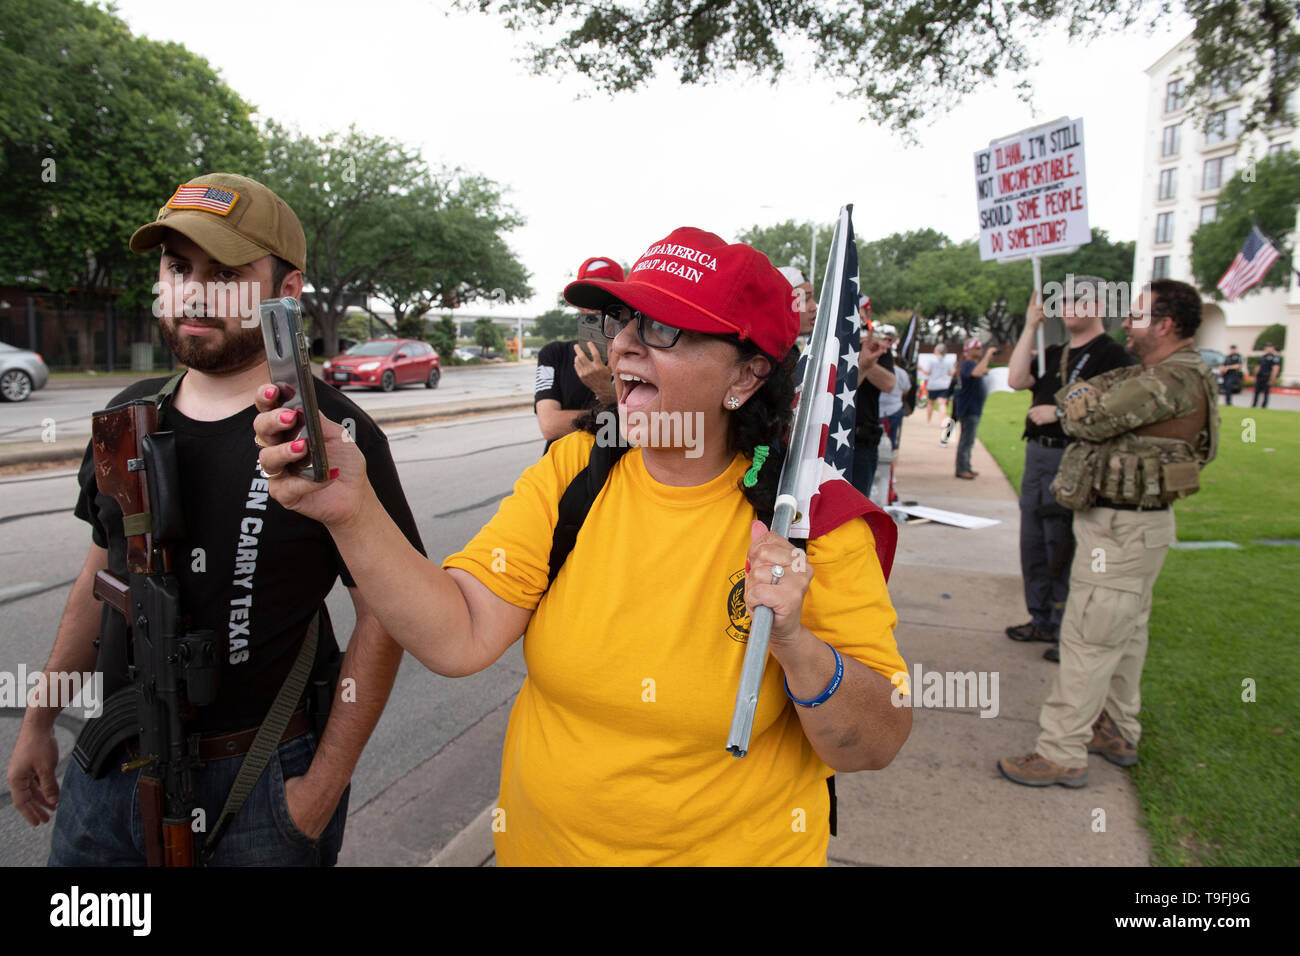 Die Demonstranten, einige öffnen die Waffen legal, Rallye außerhalb von Austin, Texas, Hotel, in dem umstrittenen Muslimischen Kongressabgeordnete Ilhan Omar sprach bei der Stadt iftar Abendessen. Omar wird vorgeworfen, die antisemitischen Äußerungen. Stockfoto